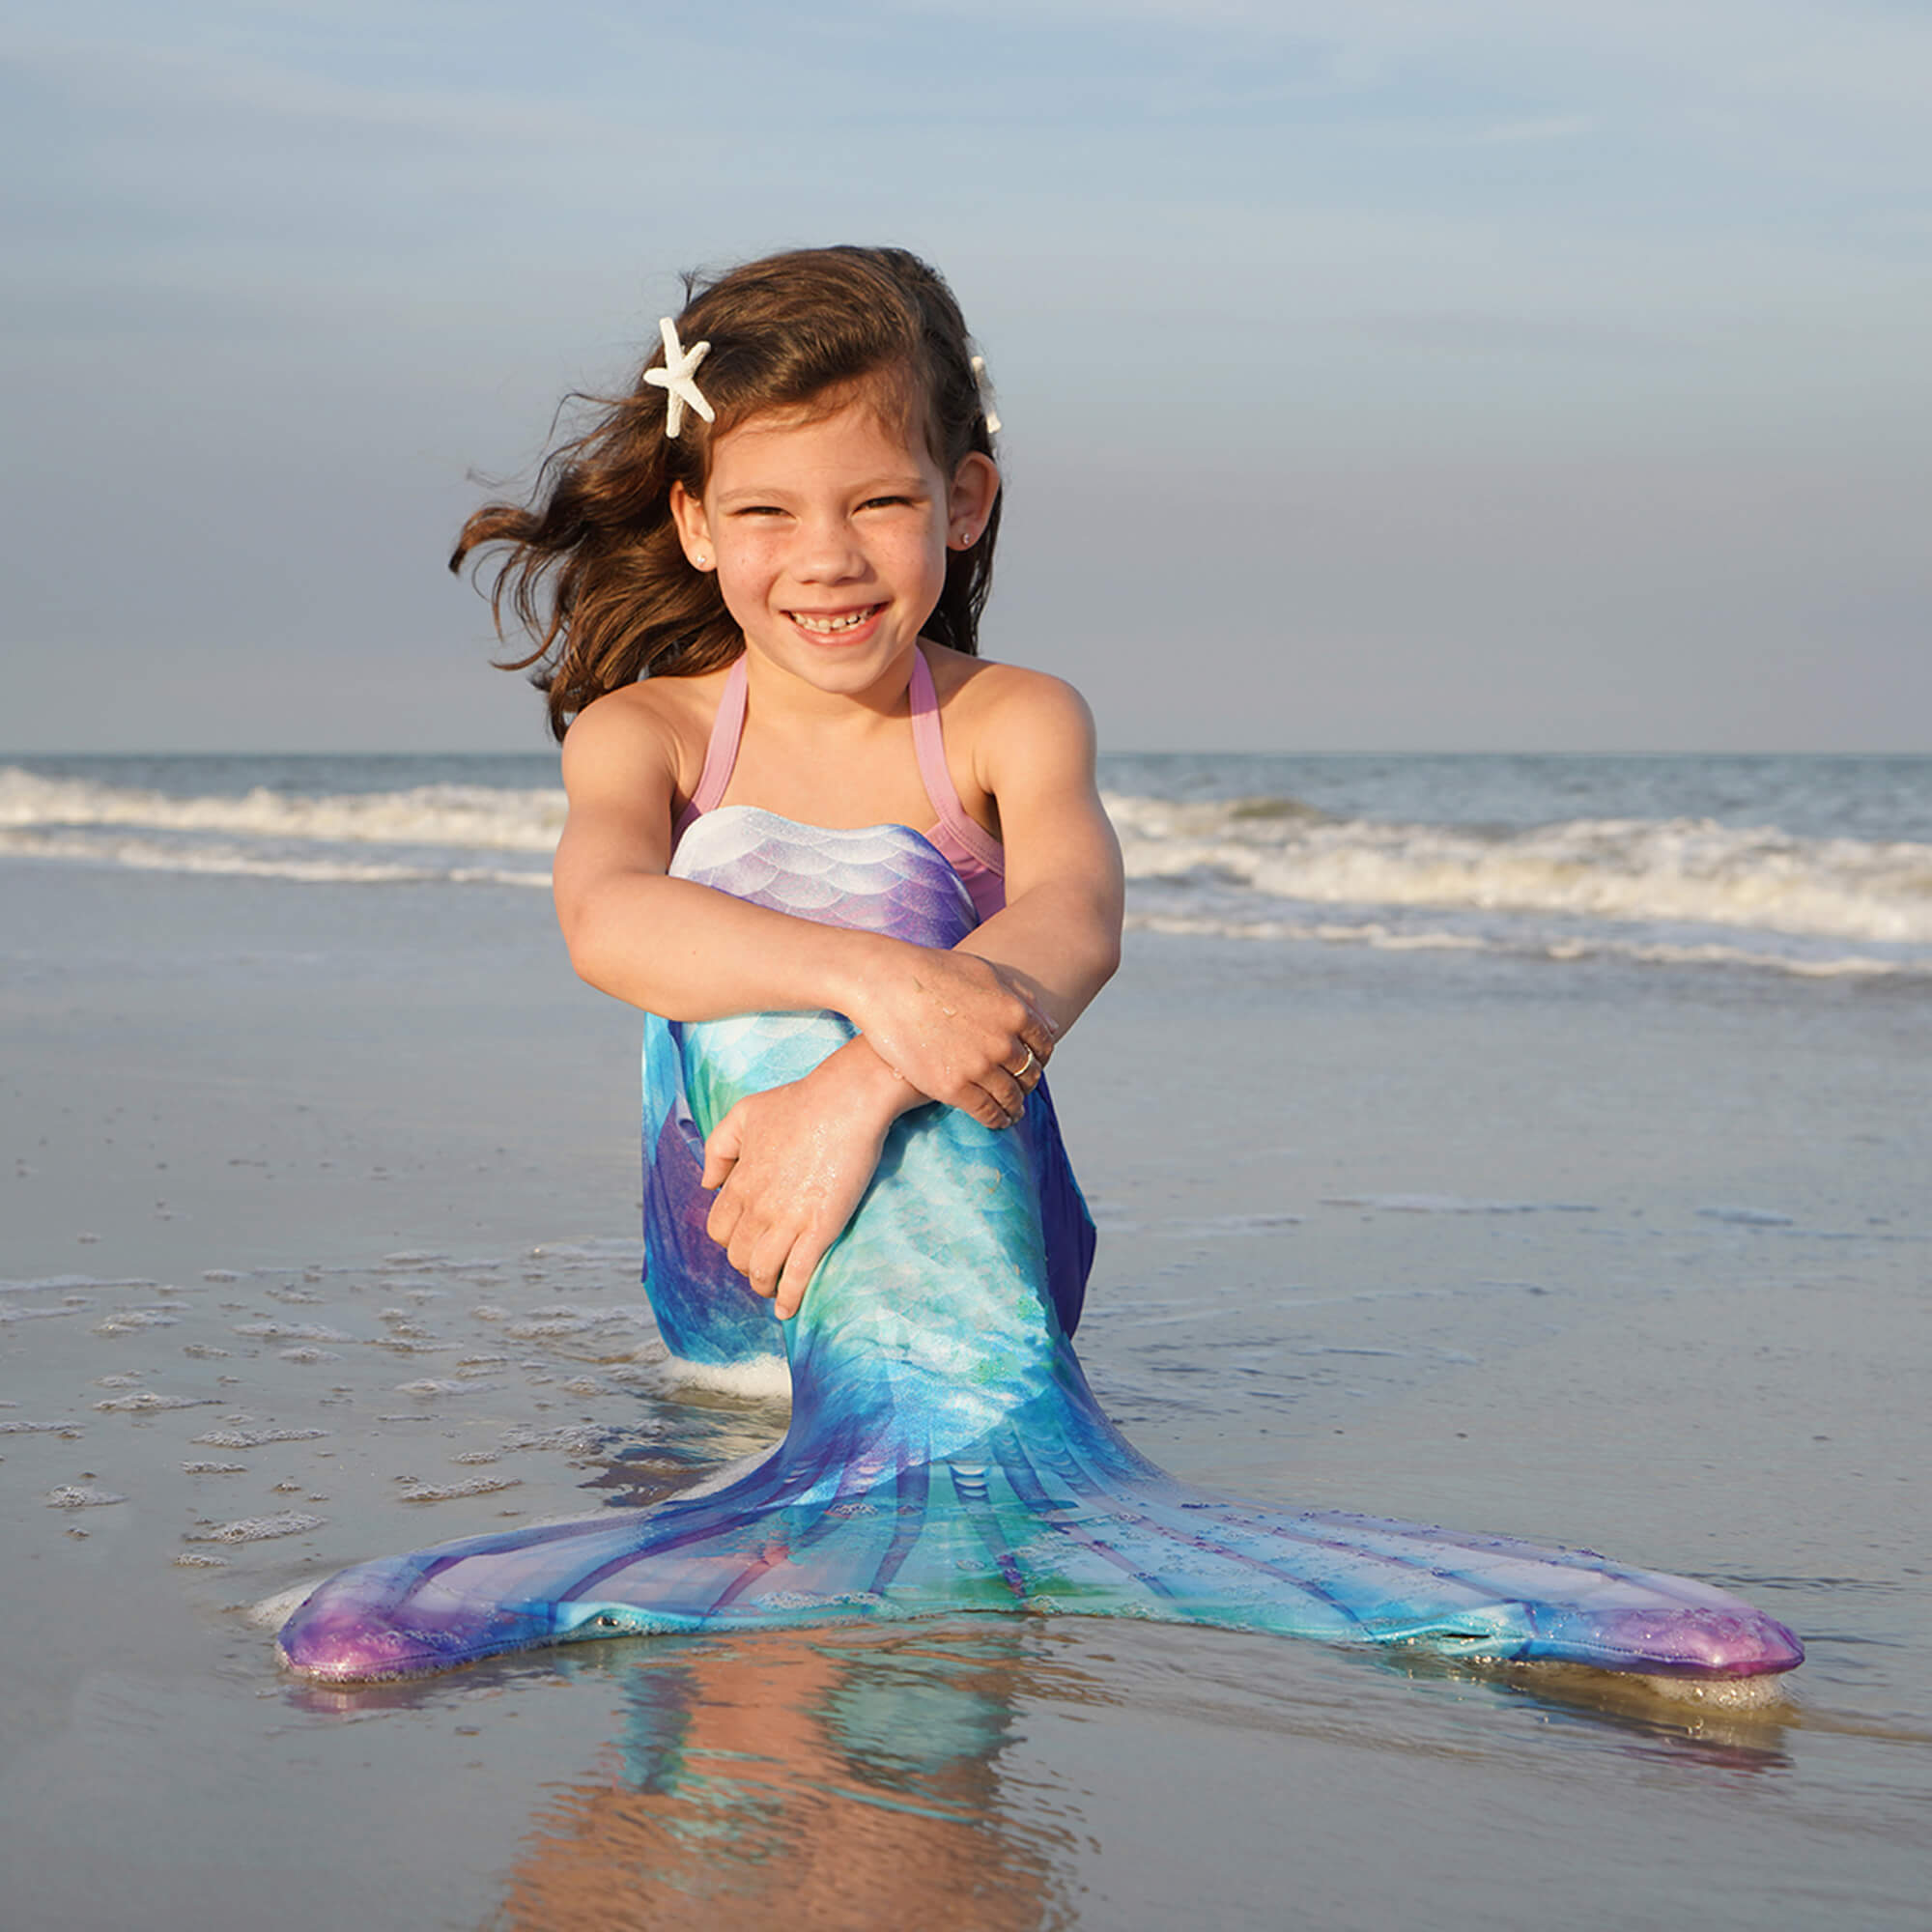 Beach mermaid photoshoot